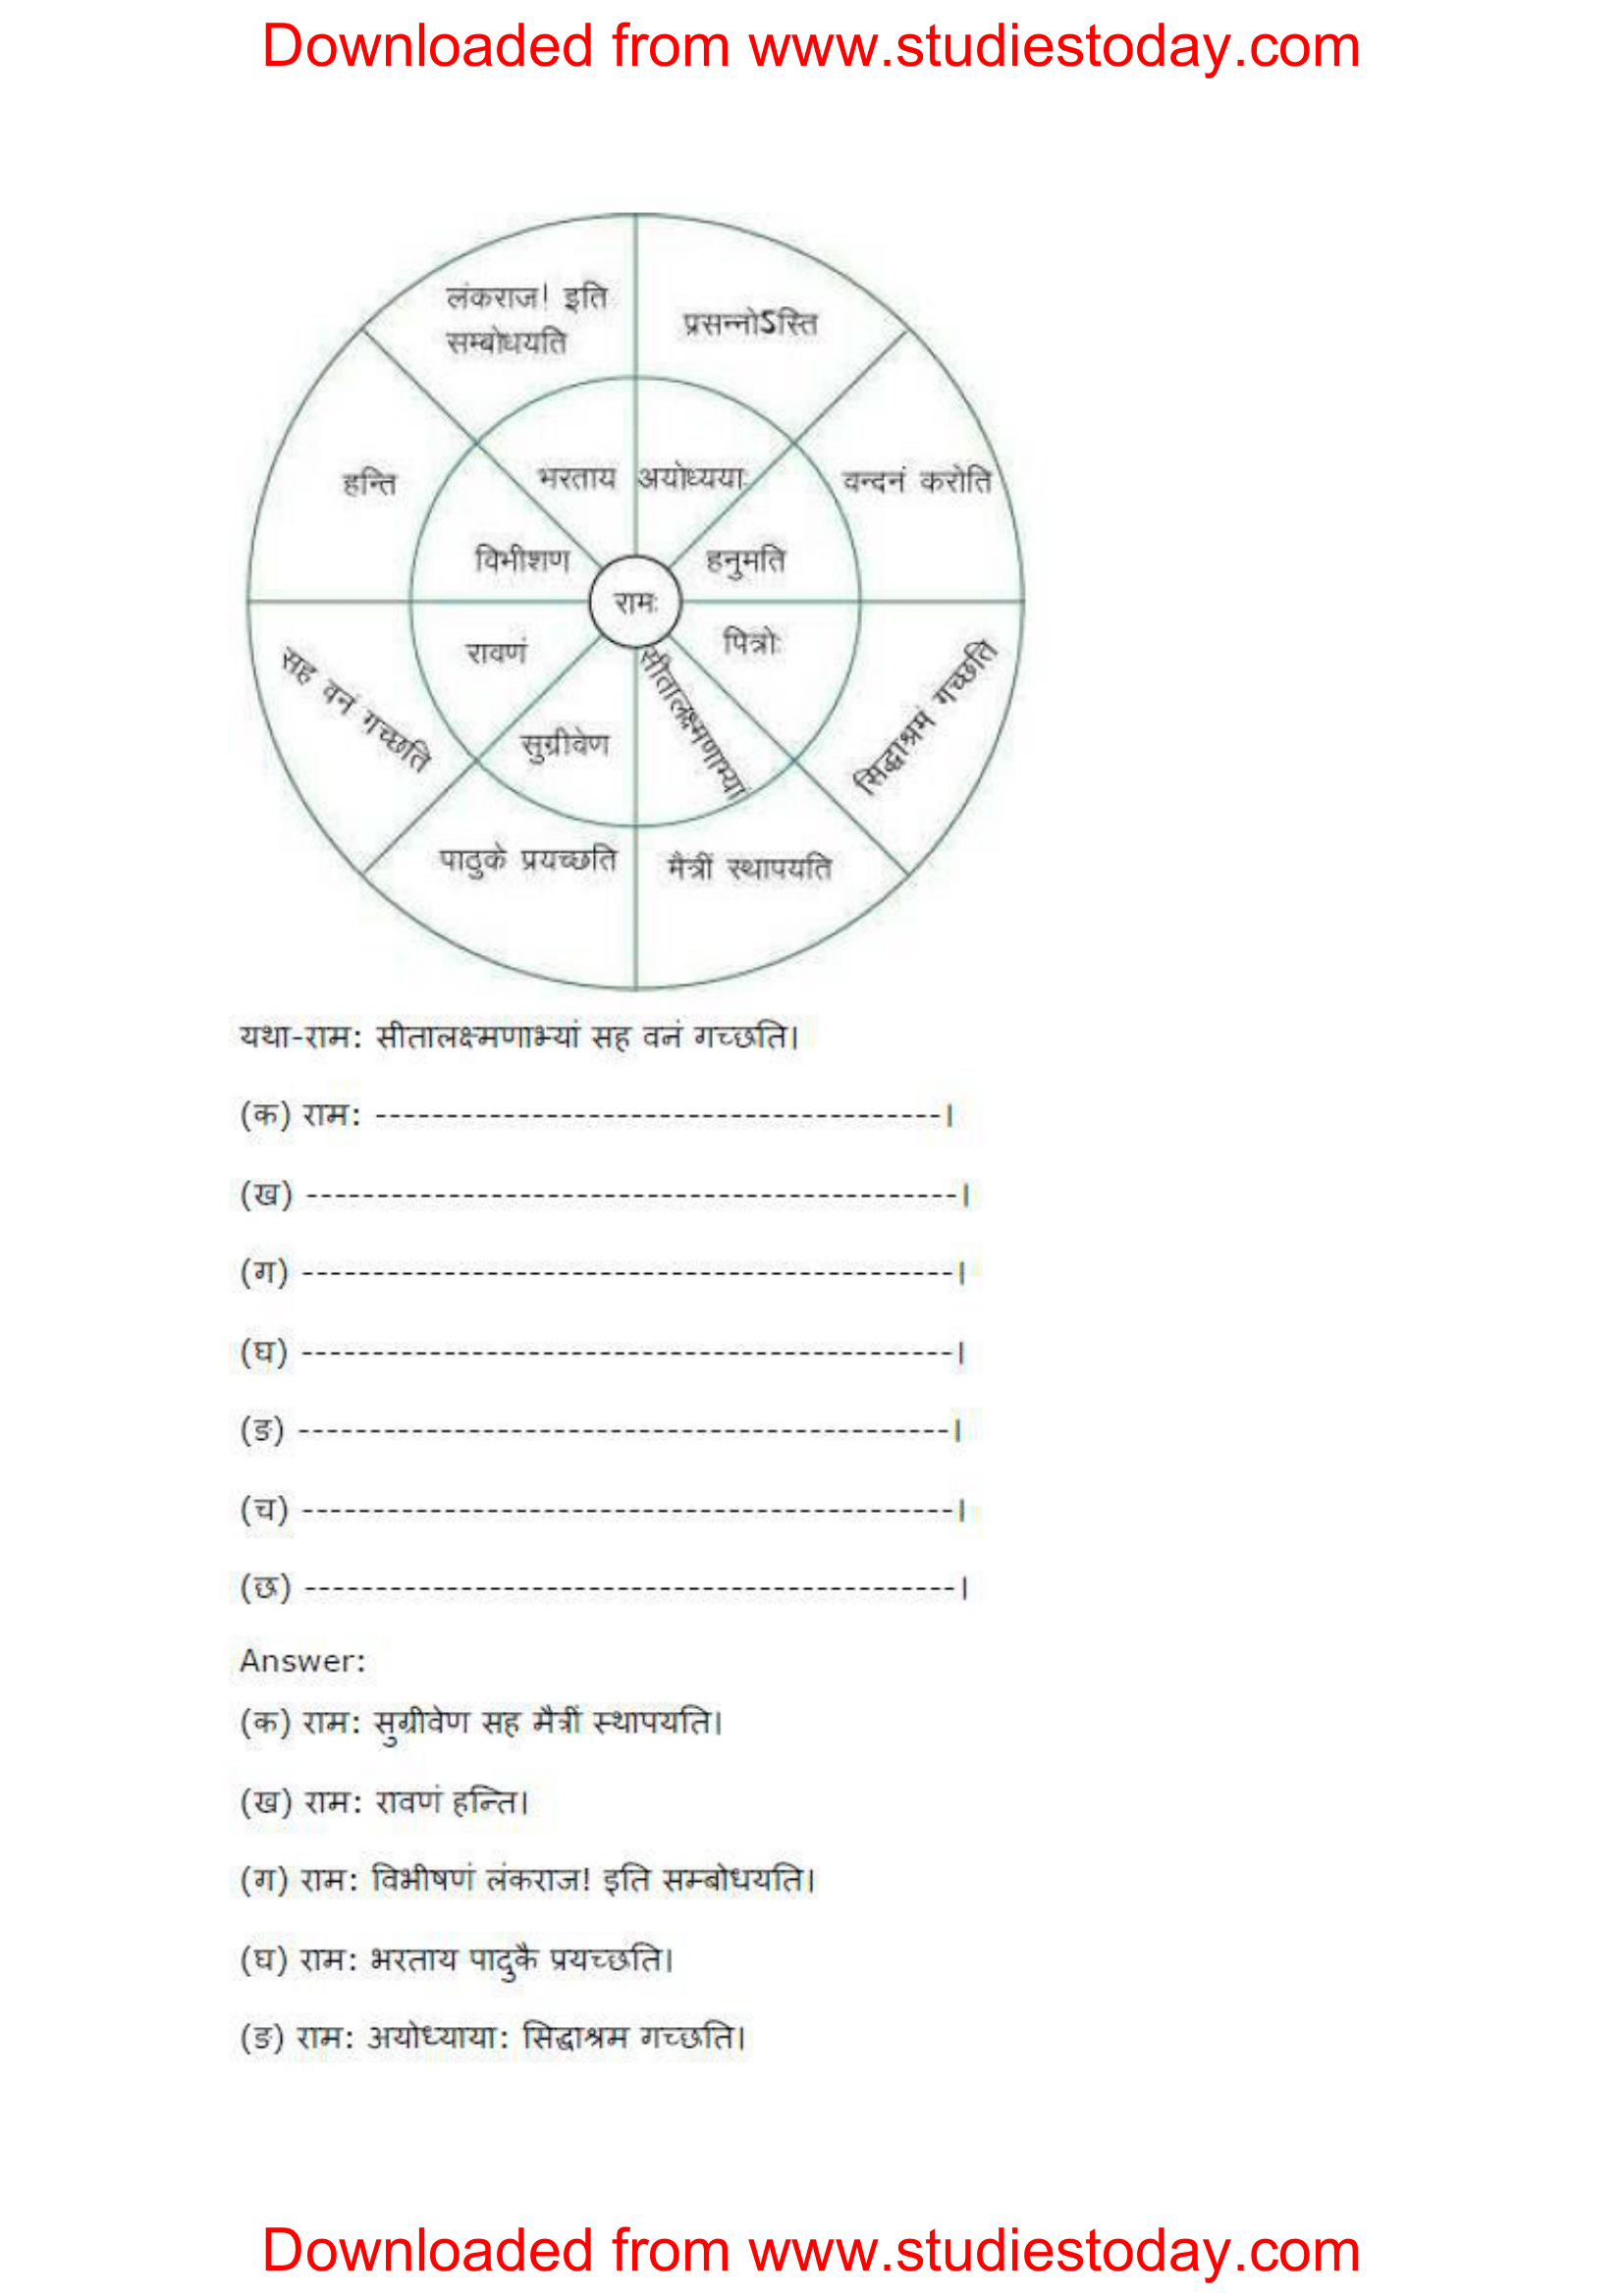 ncert-solutions-class-8-sanskrit-chapter-10-ashokvanika-5